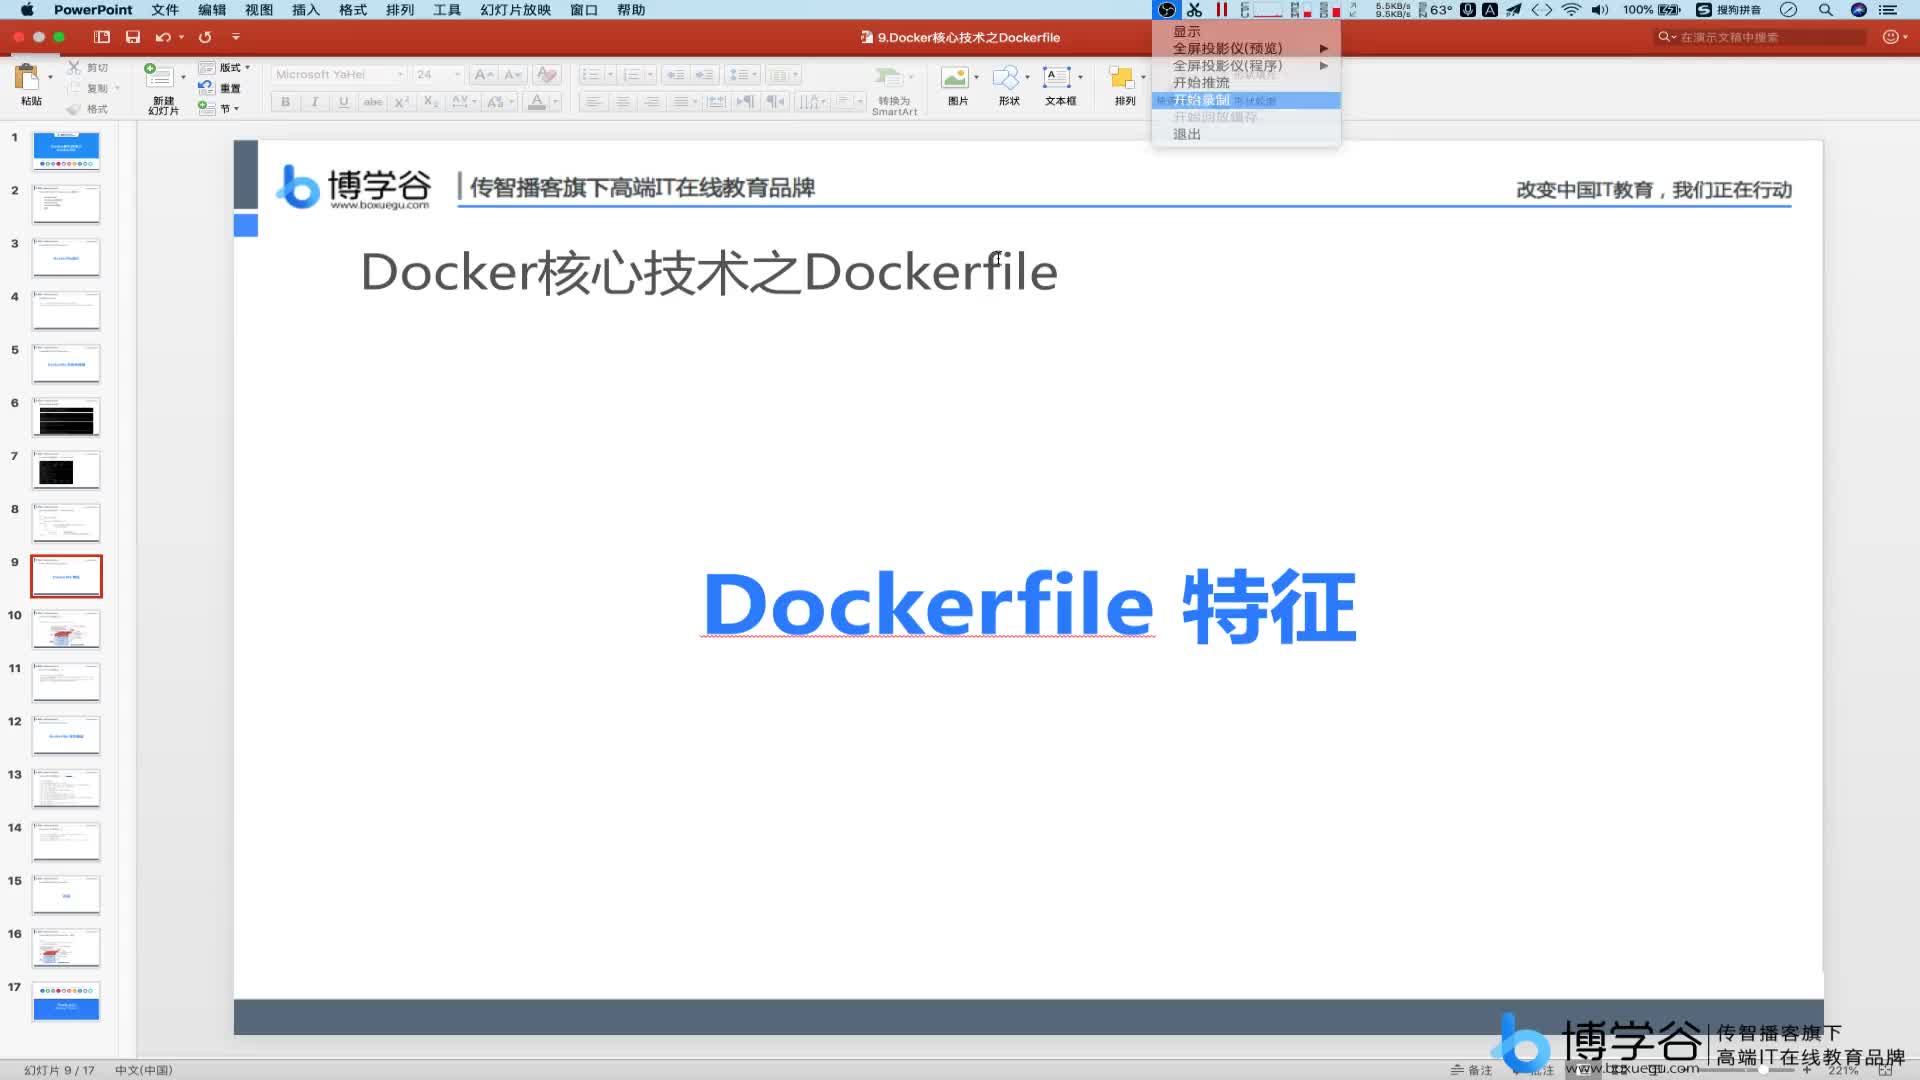 5.Dockerfile构建过程的特征